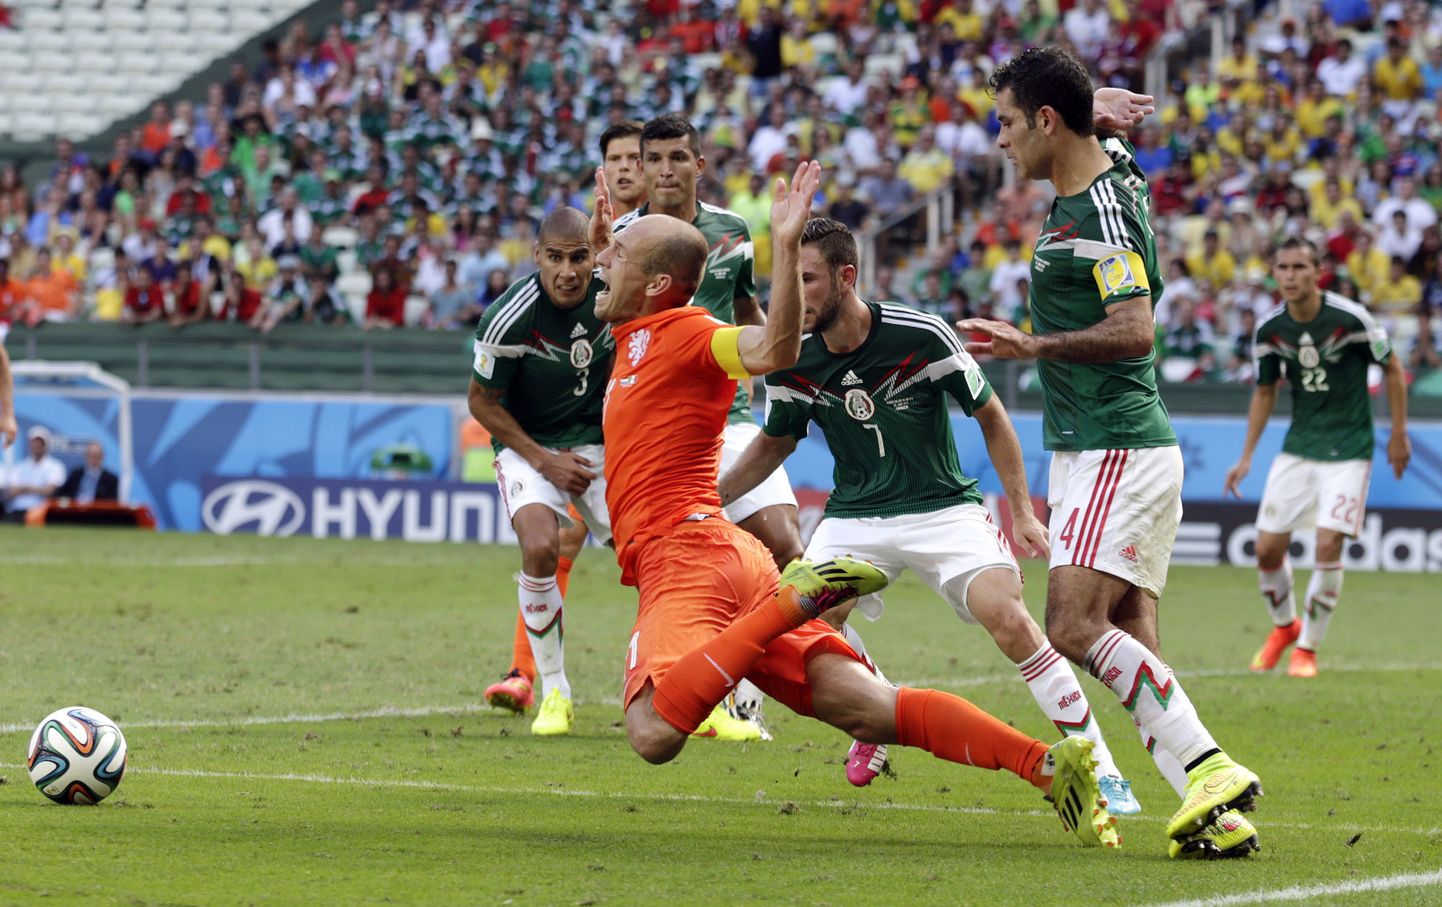 Hollandi staarmängija Arjen Robben penaltit teenimas